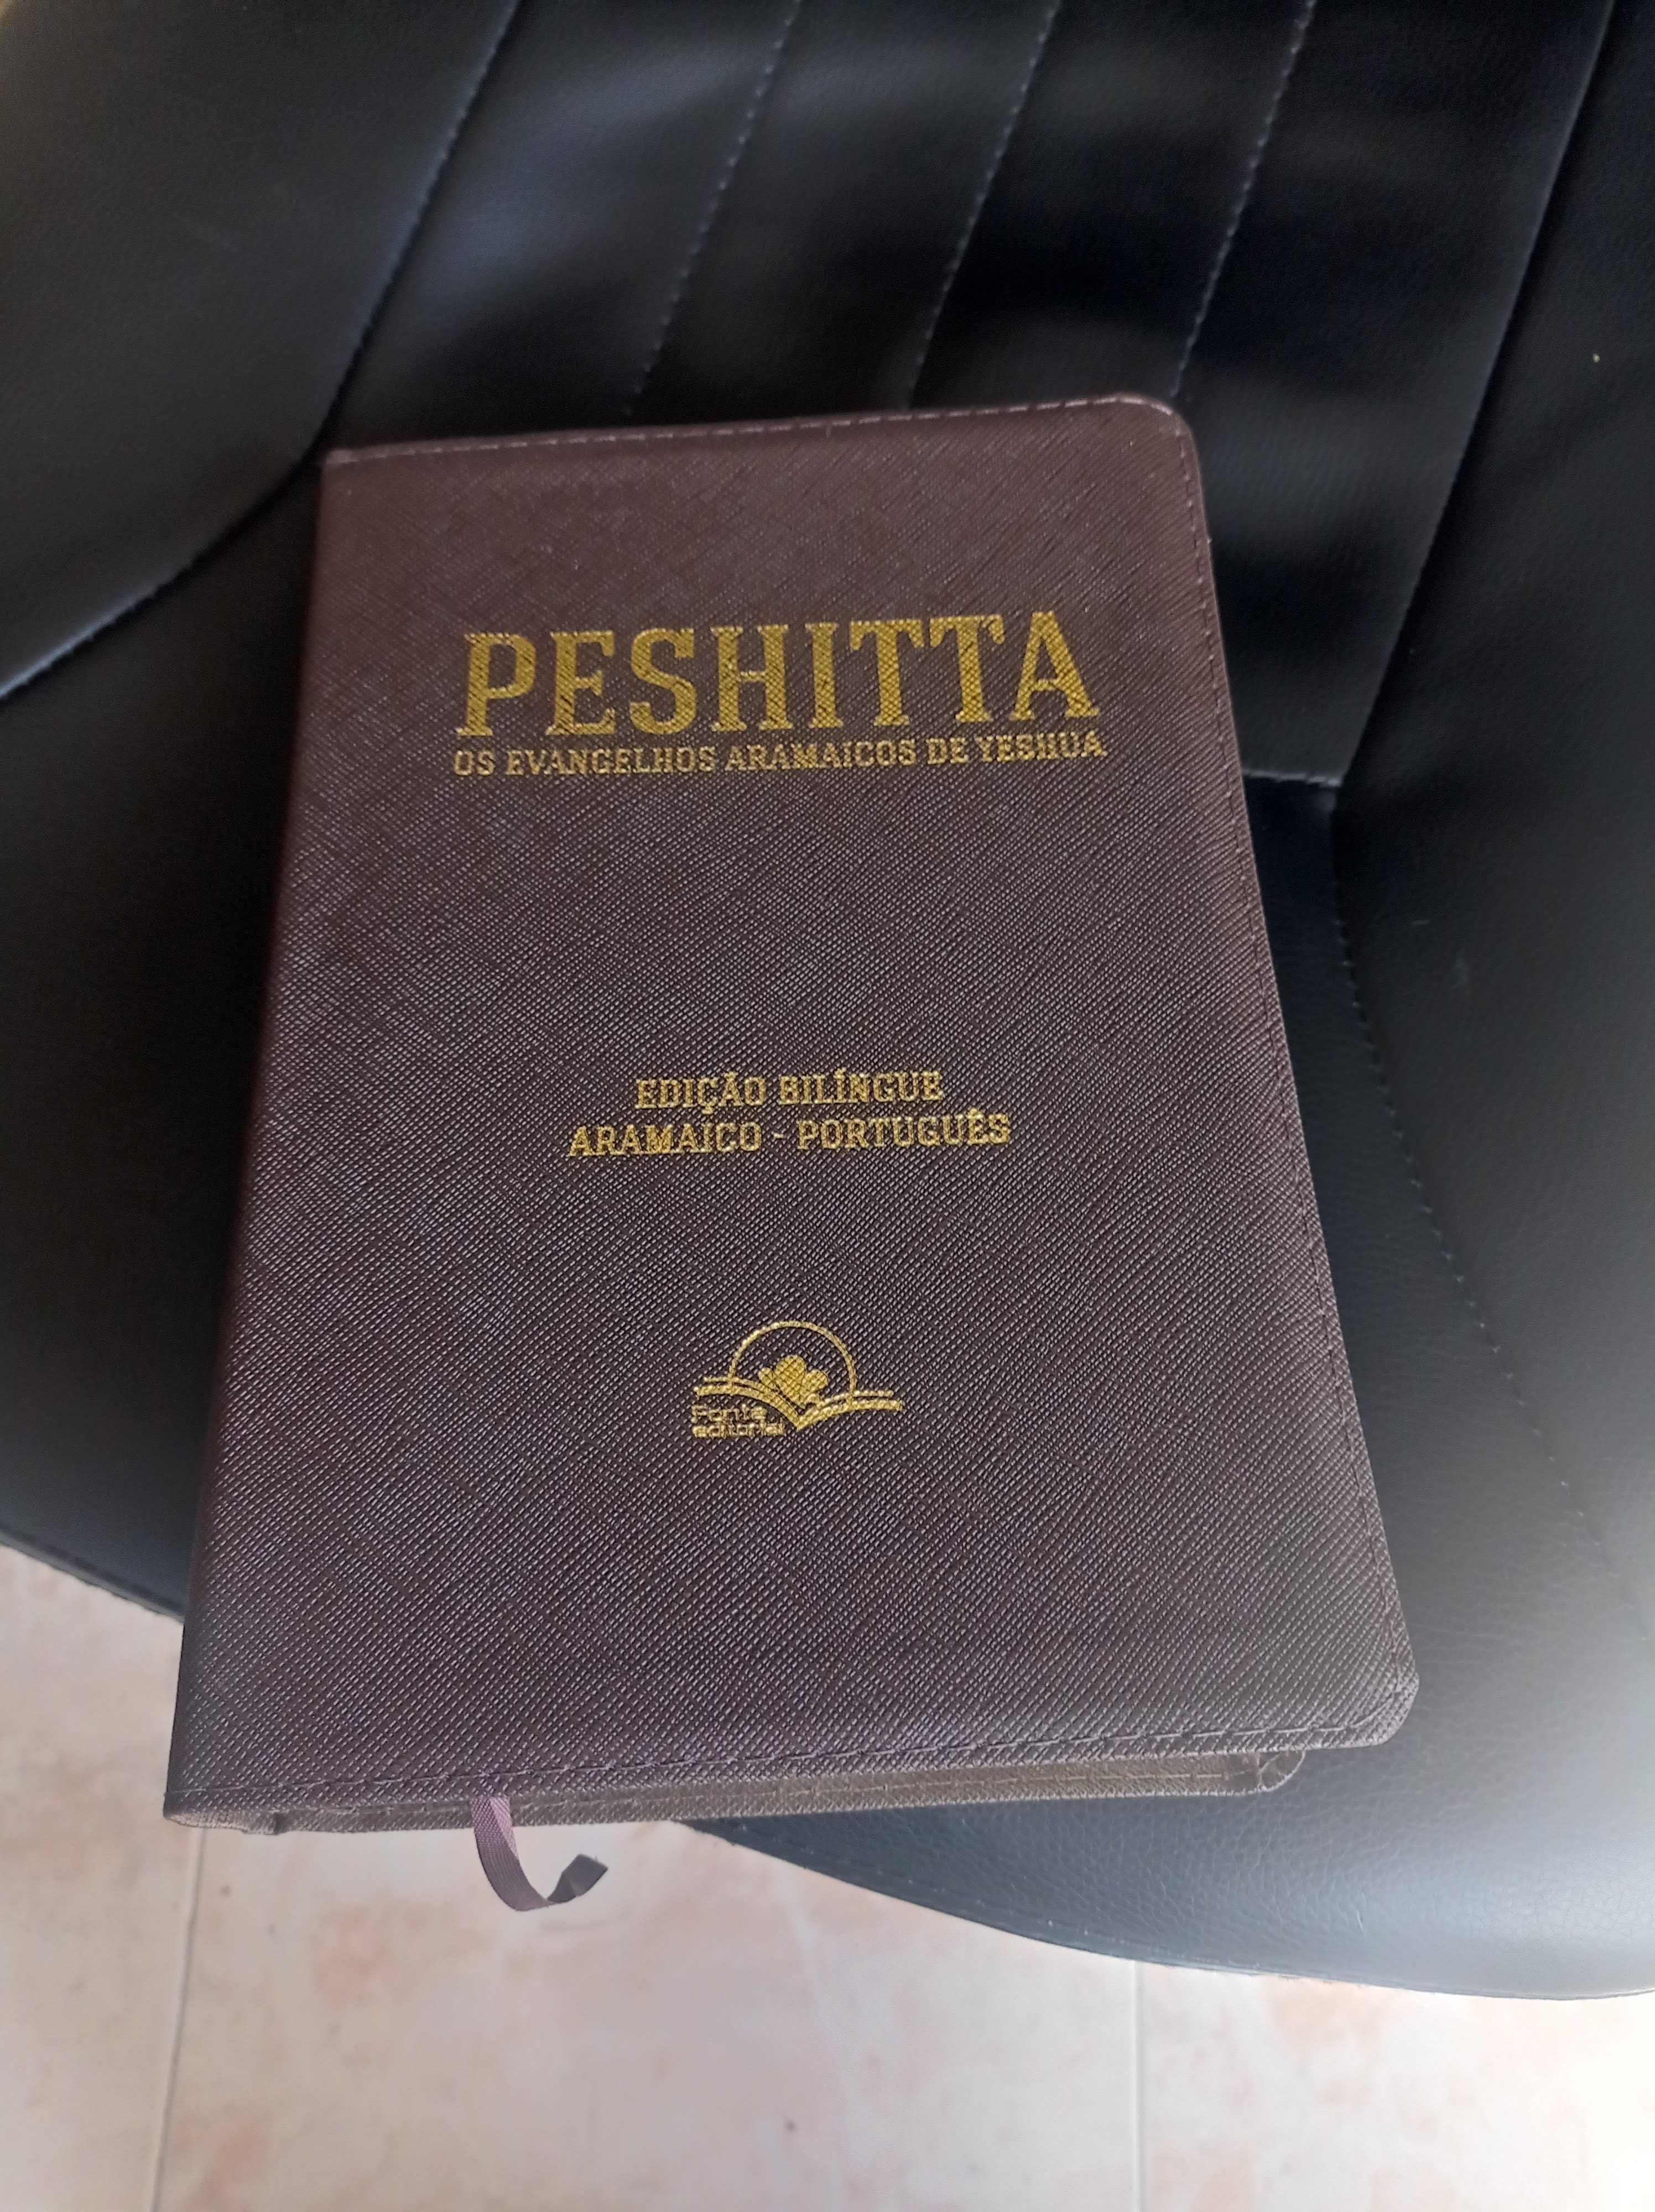 Bíblia Peshitta edição bilingue